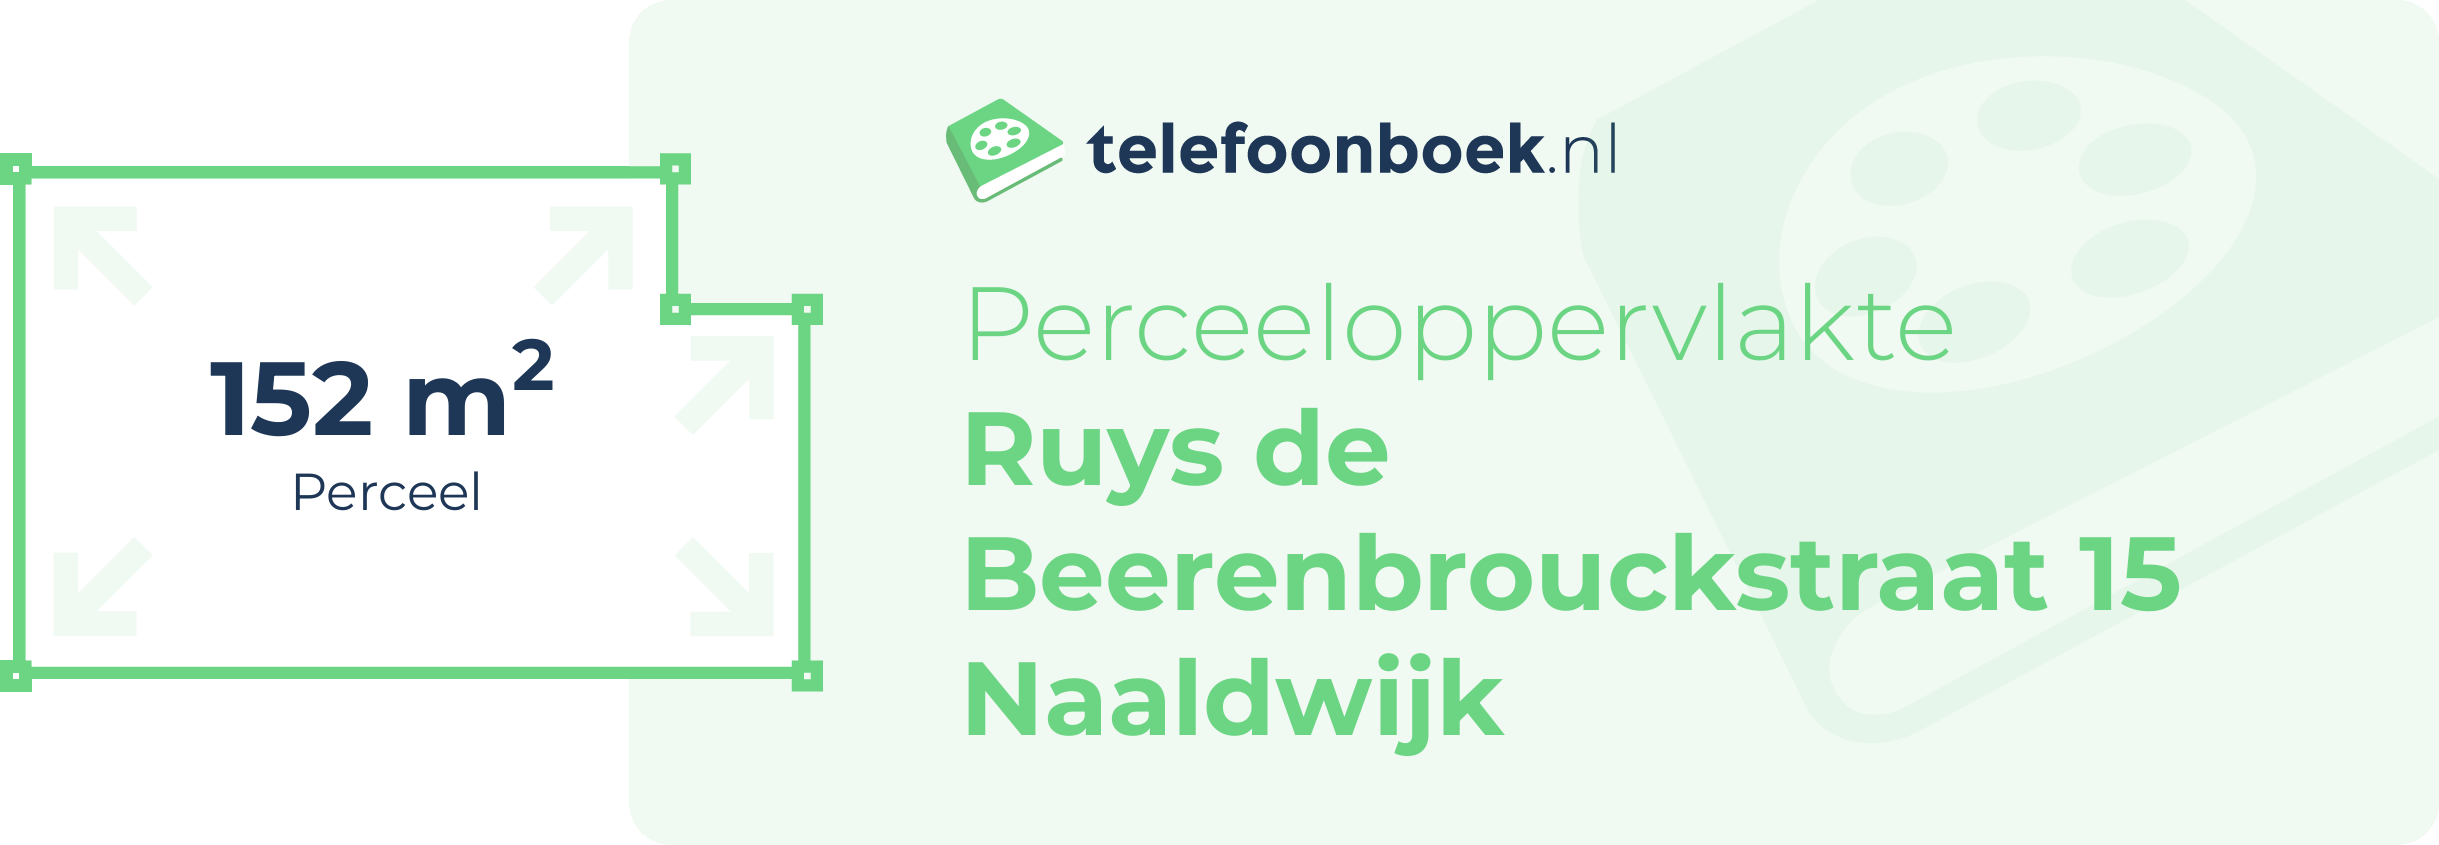 Perceeloppervlakte Ruys De Beerenbrouckstraat 15 Naaldwijk